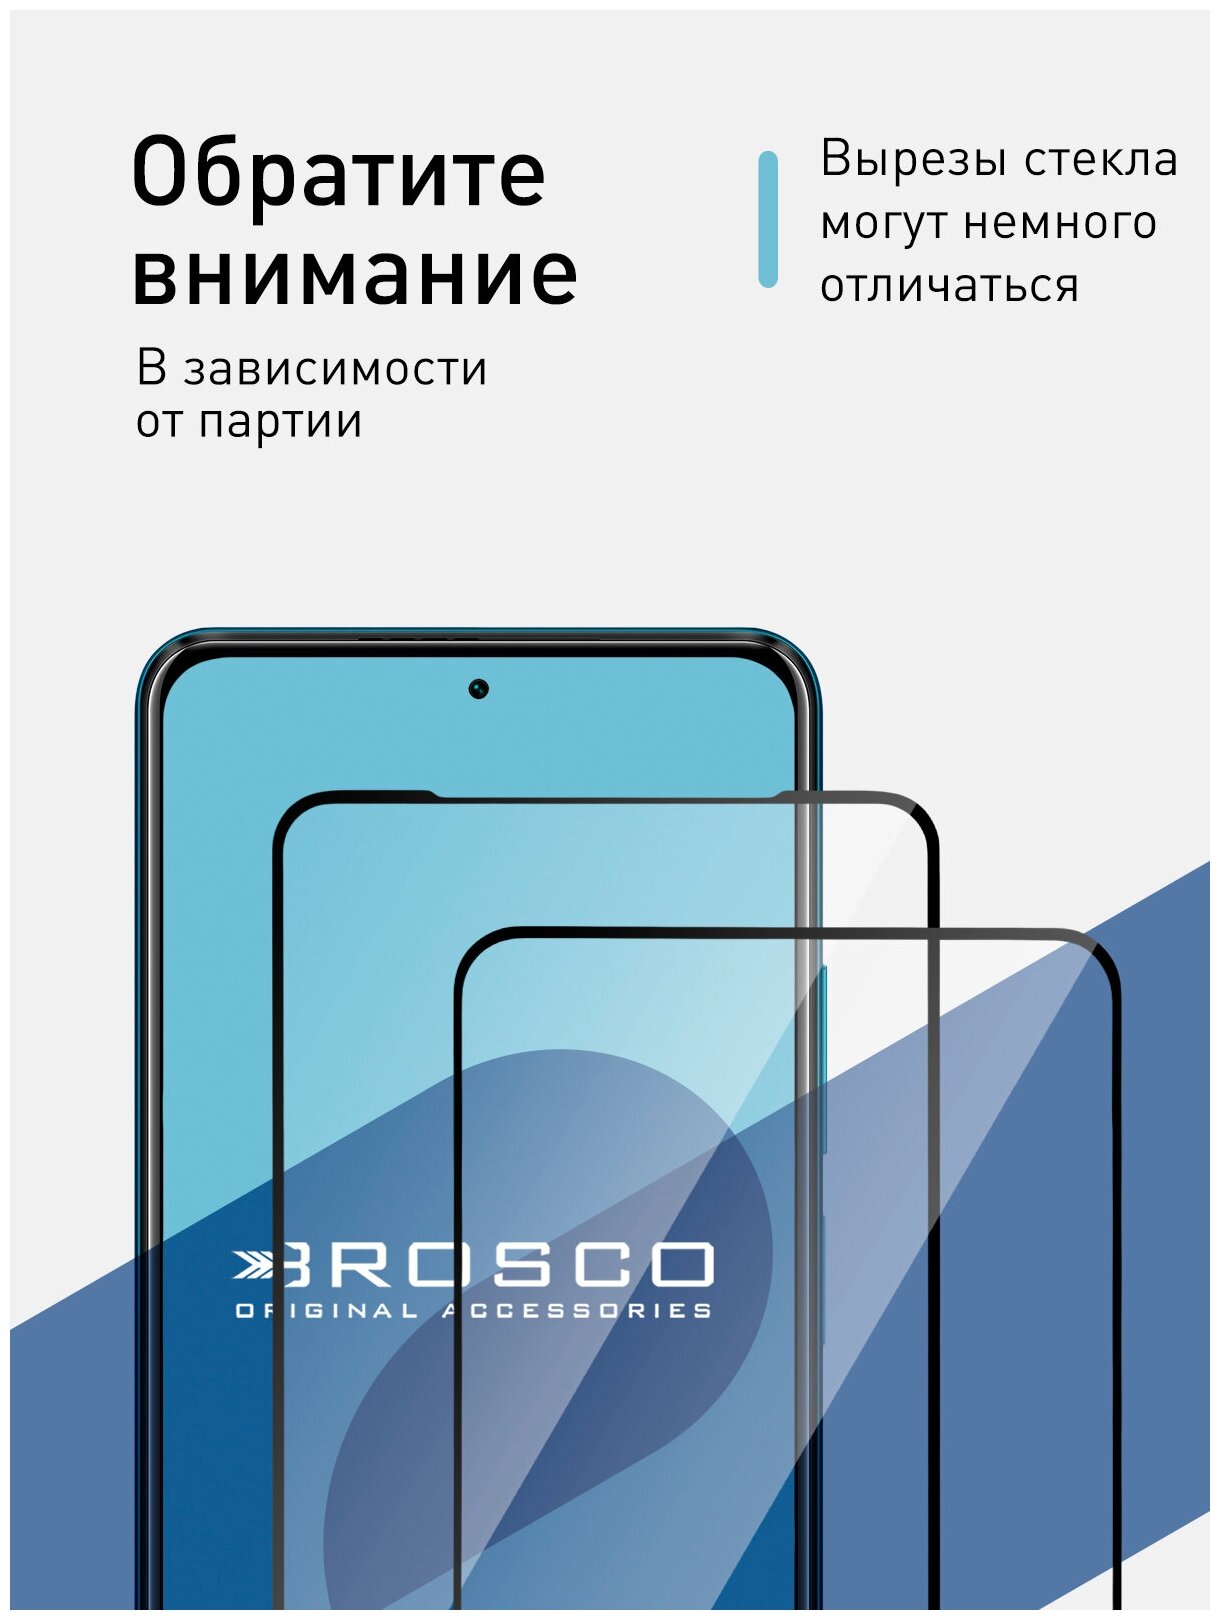 Защитное стекло с черной рамкой ROSCO для Xiaomi Poco X3 NFC и Poco X3 Pro (Сяоми / Ксиаоми Поко Х3 НФС и Х3 Про) силиконовая клеевая основа